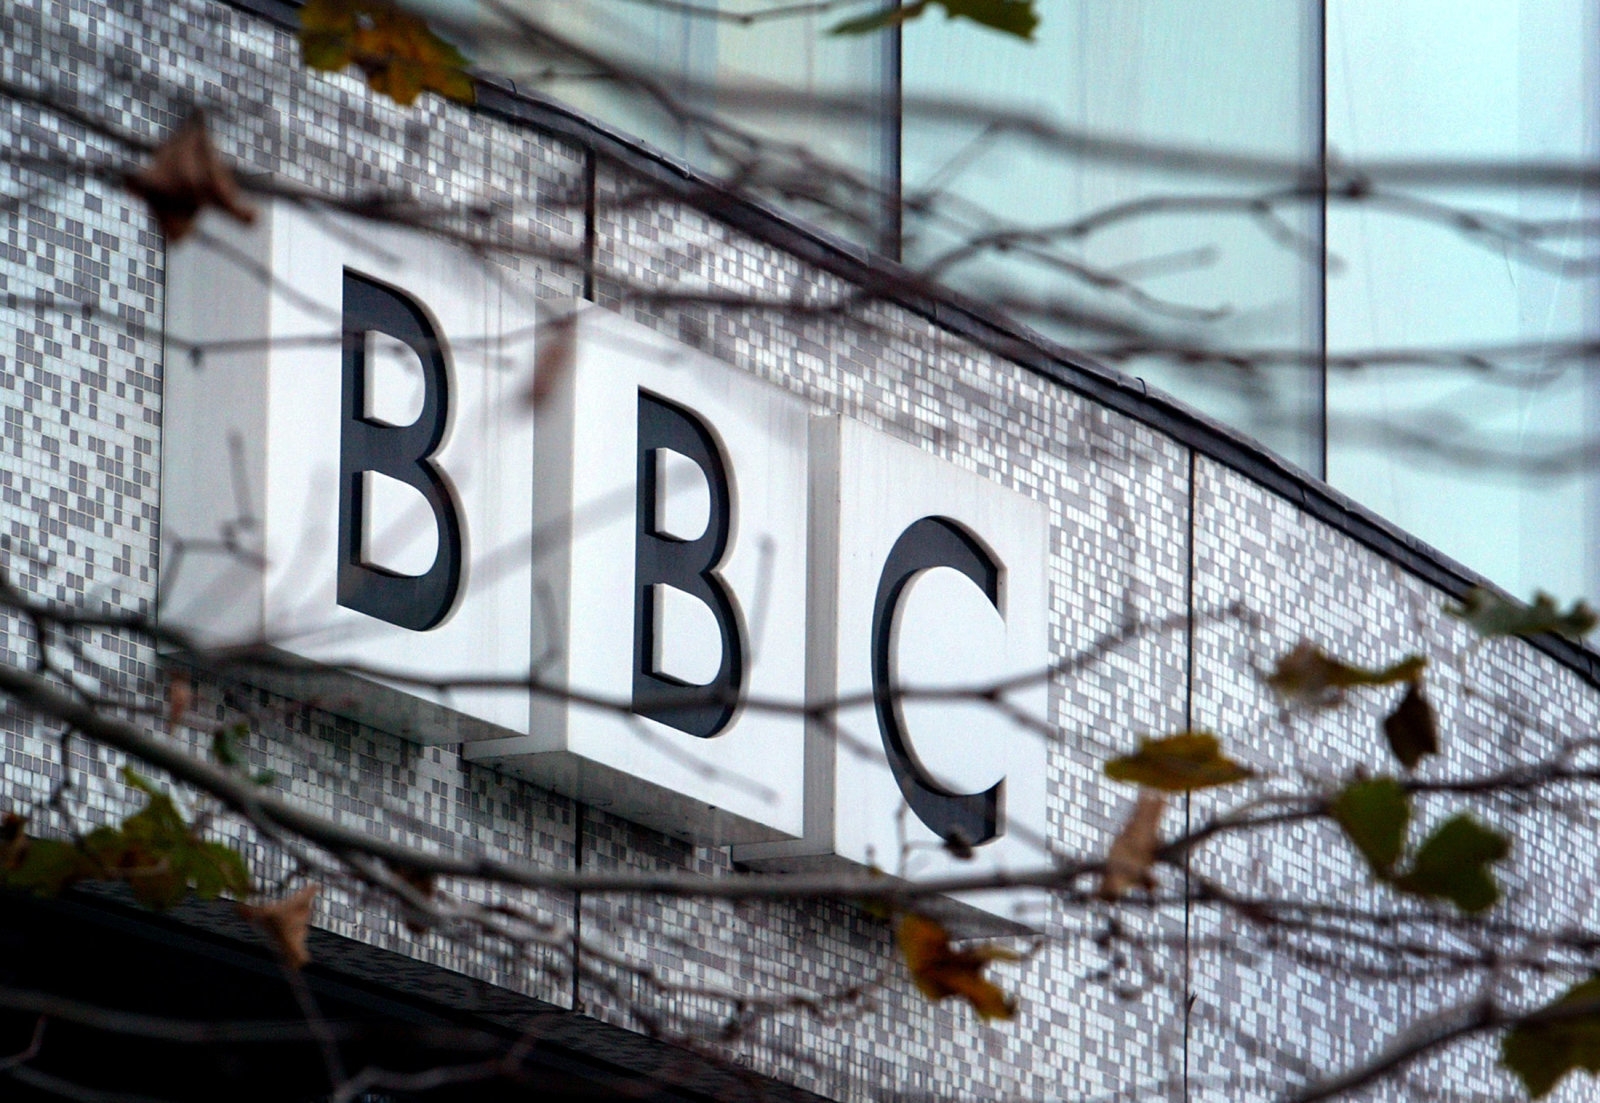 Ofcom orders BBC to show more original British productions | DeviceDaily.com